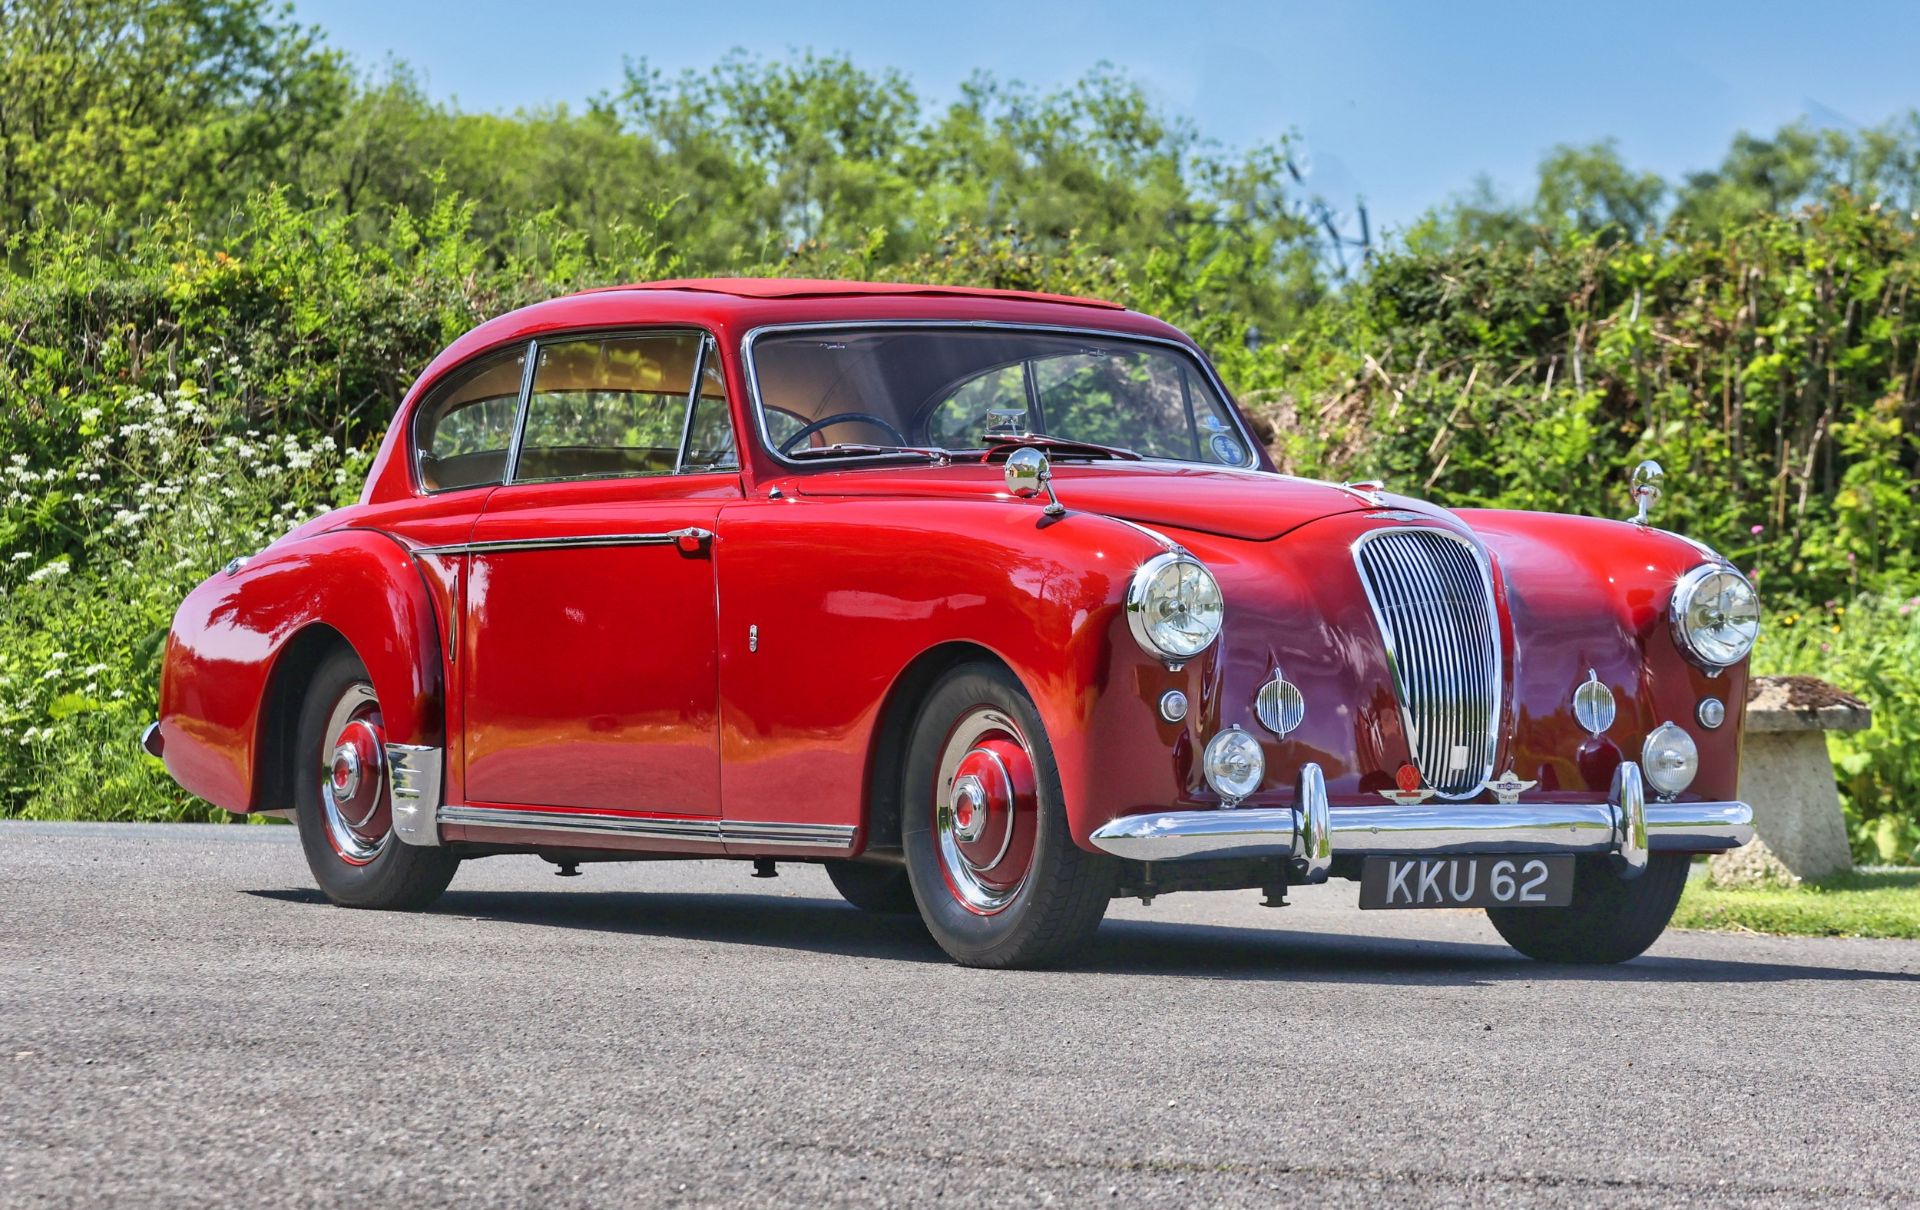 1953 LAGONDA 3-LITRE COUPE Registration Number: KKU 62 Chassis Number: LAG/50/539 Engine Number: